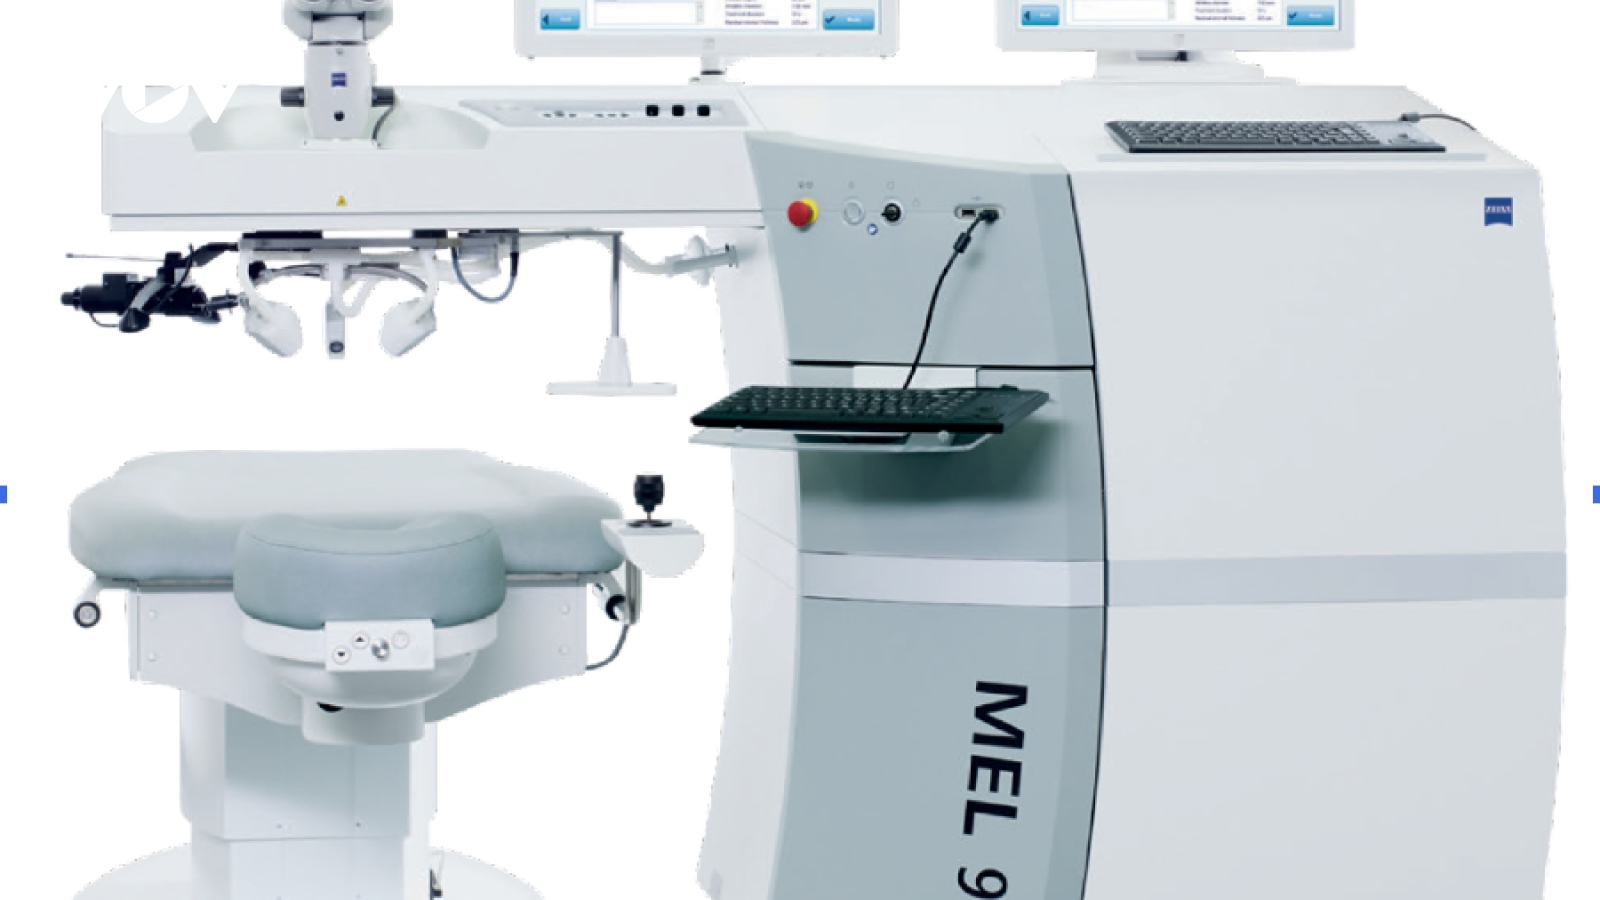 Bệnh viện Mắt Quốc tế DND sở hữu hệ thống thiết bị đồng bộ hiện đại thế giới